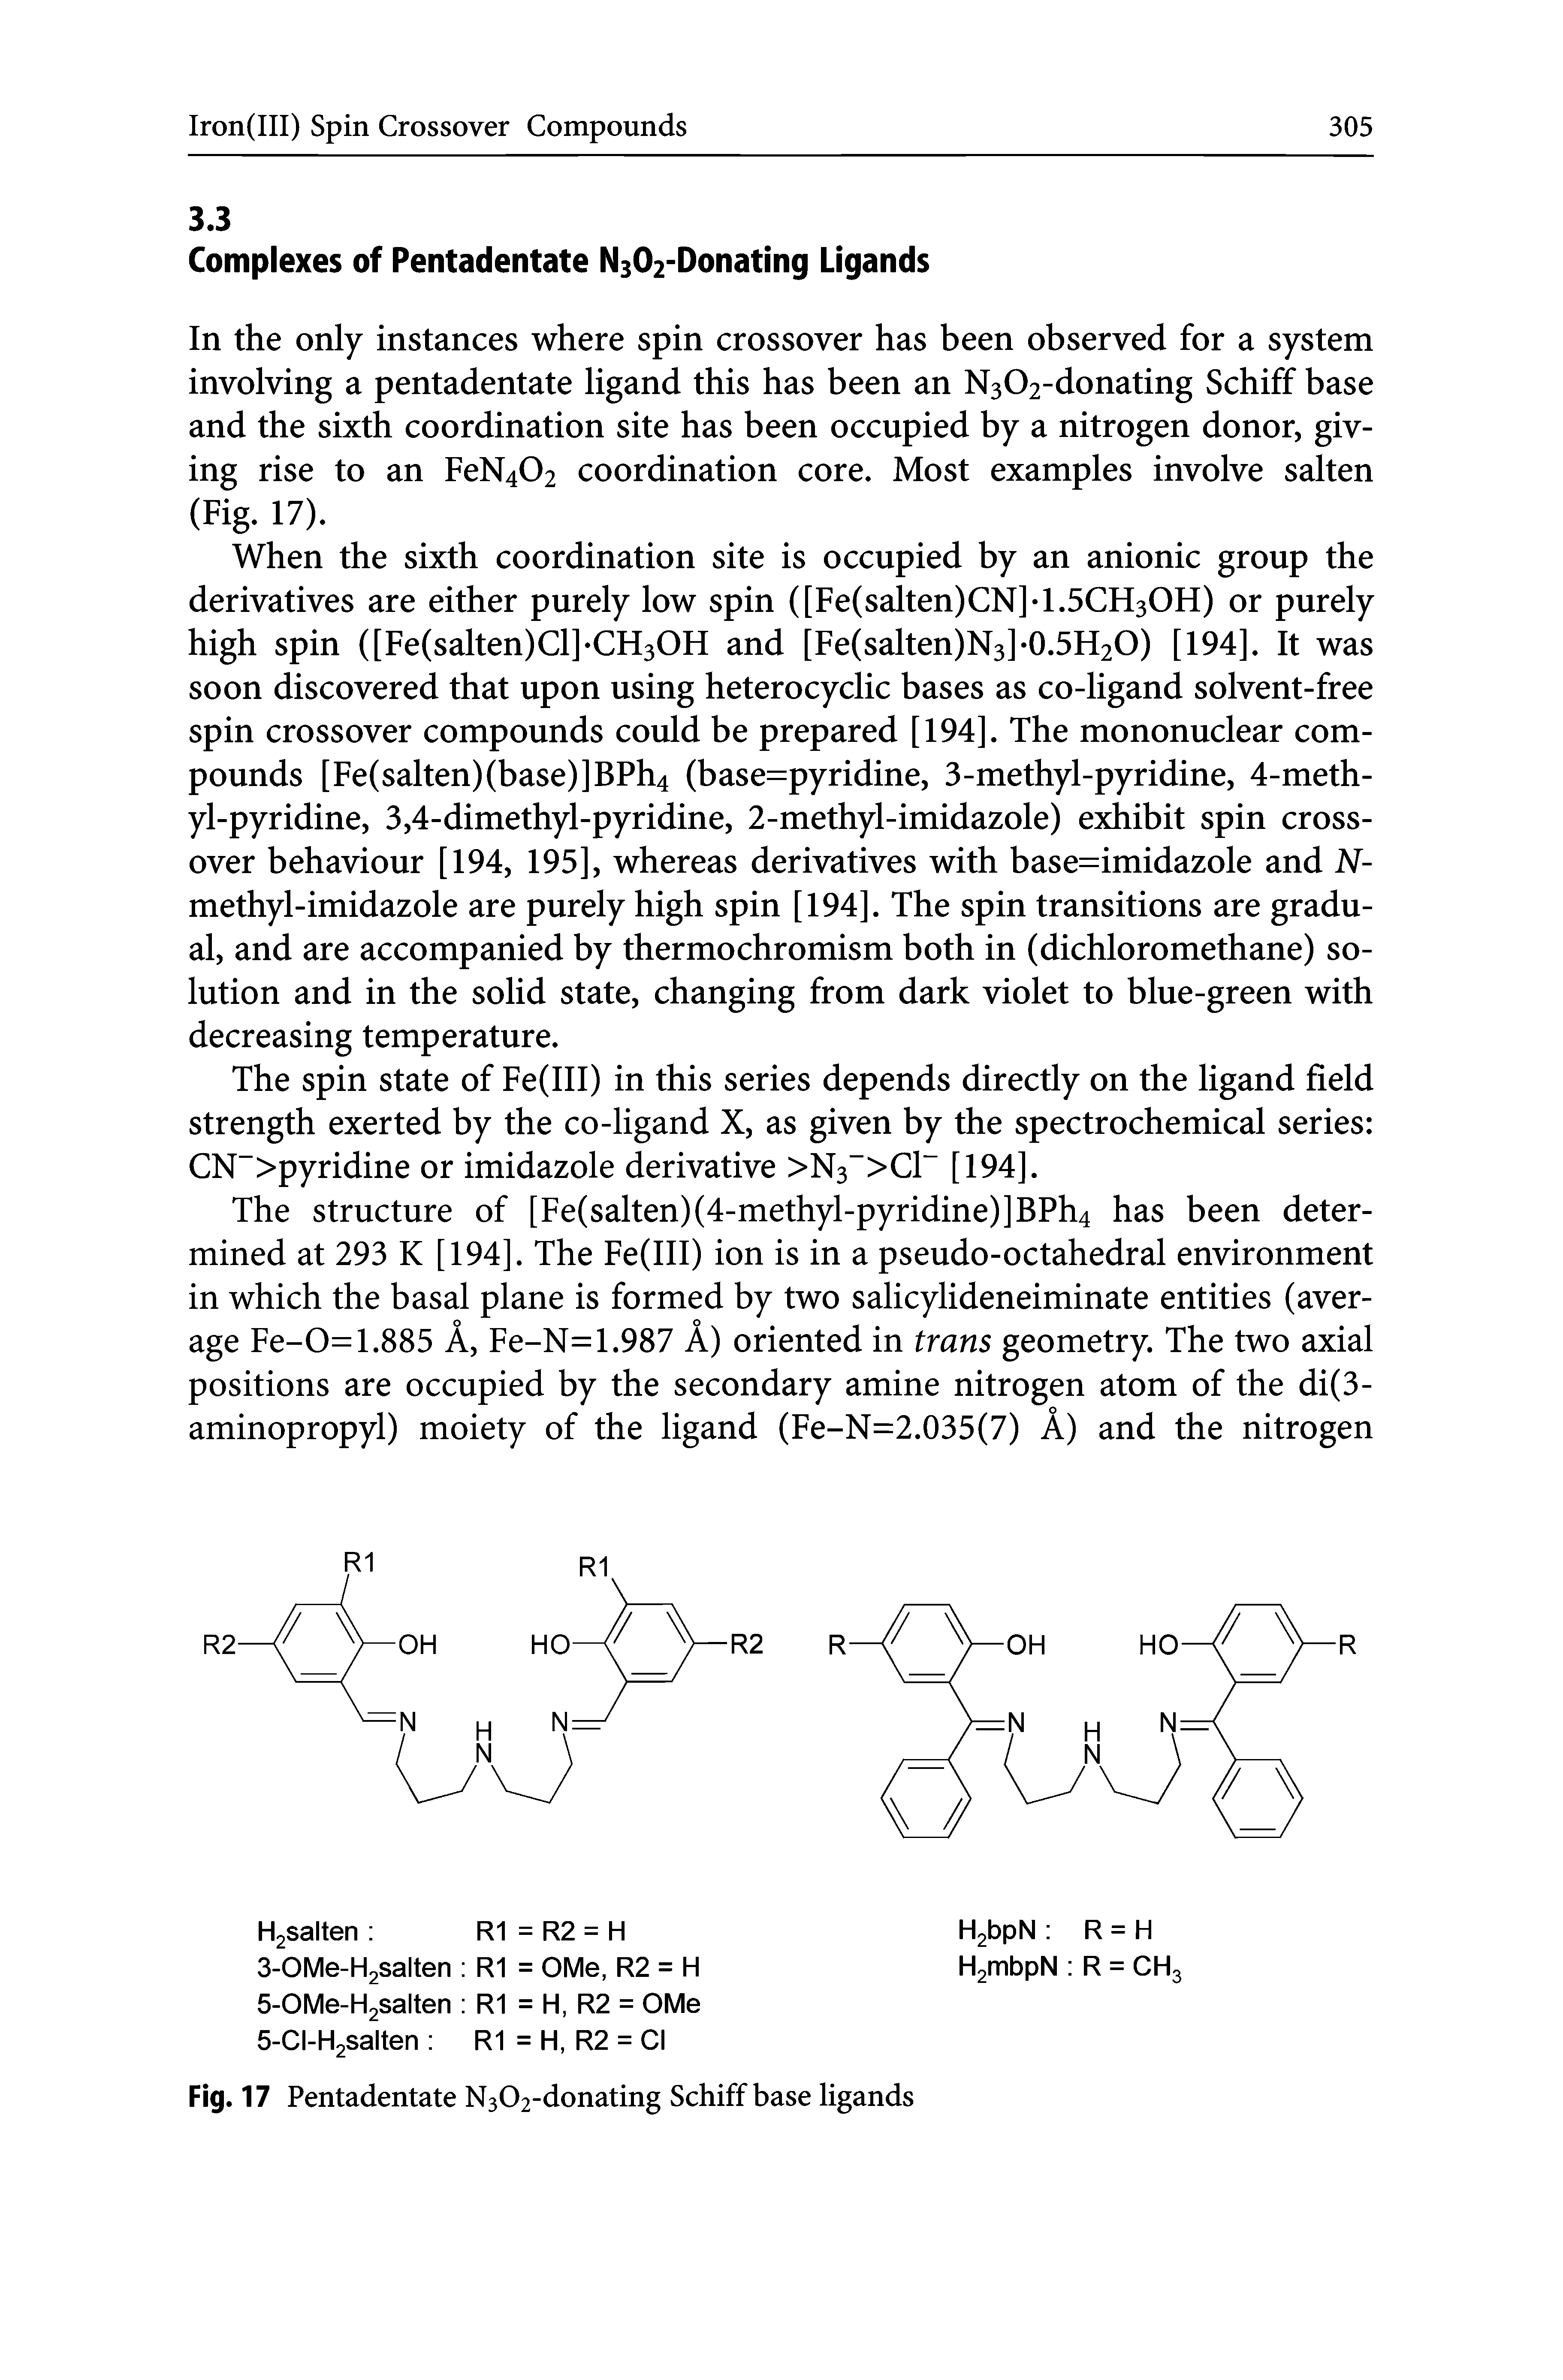 Fig. 17 Pentadentate N302-donating Schiff base ligands...